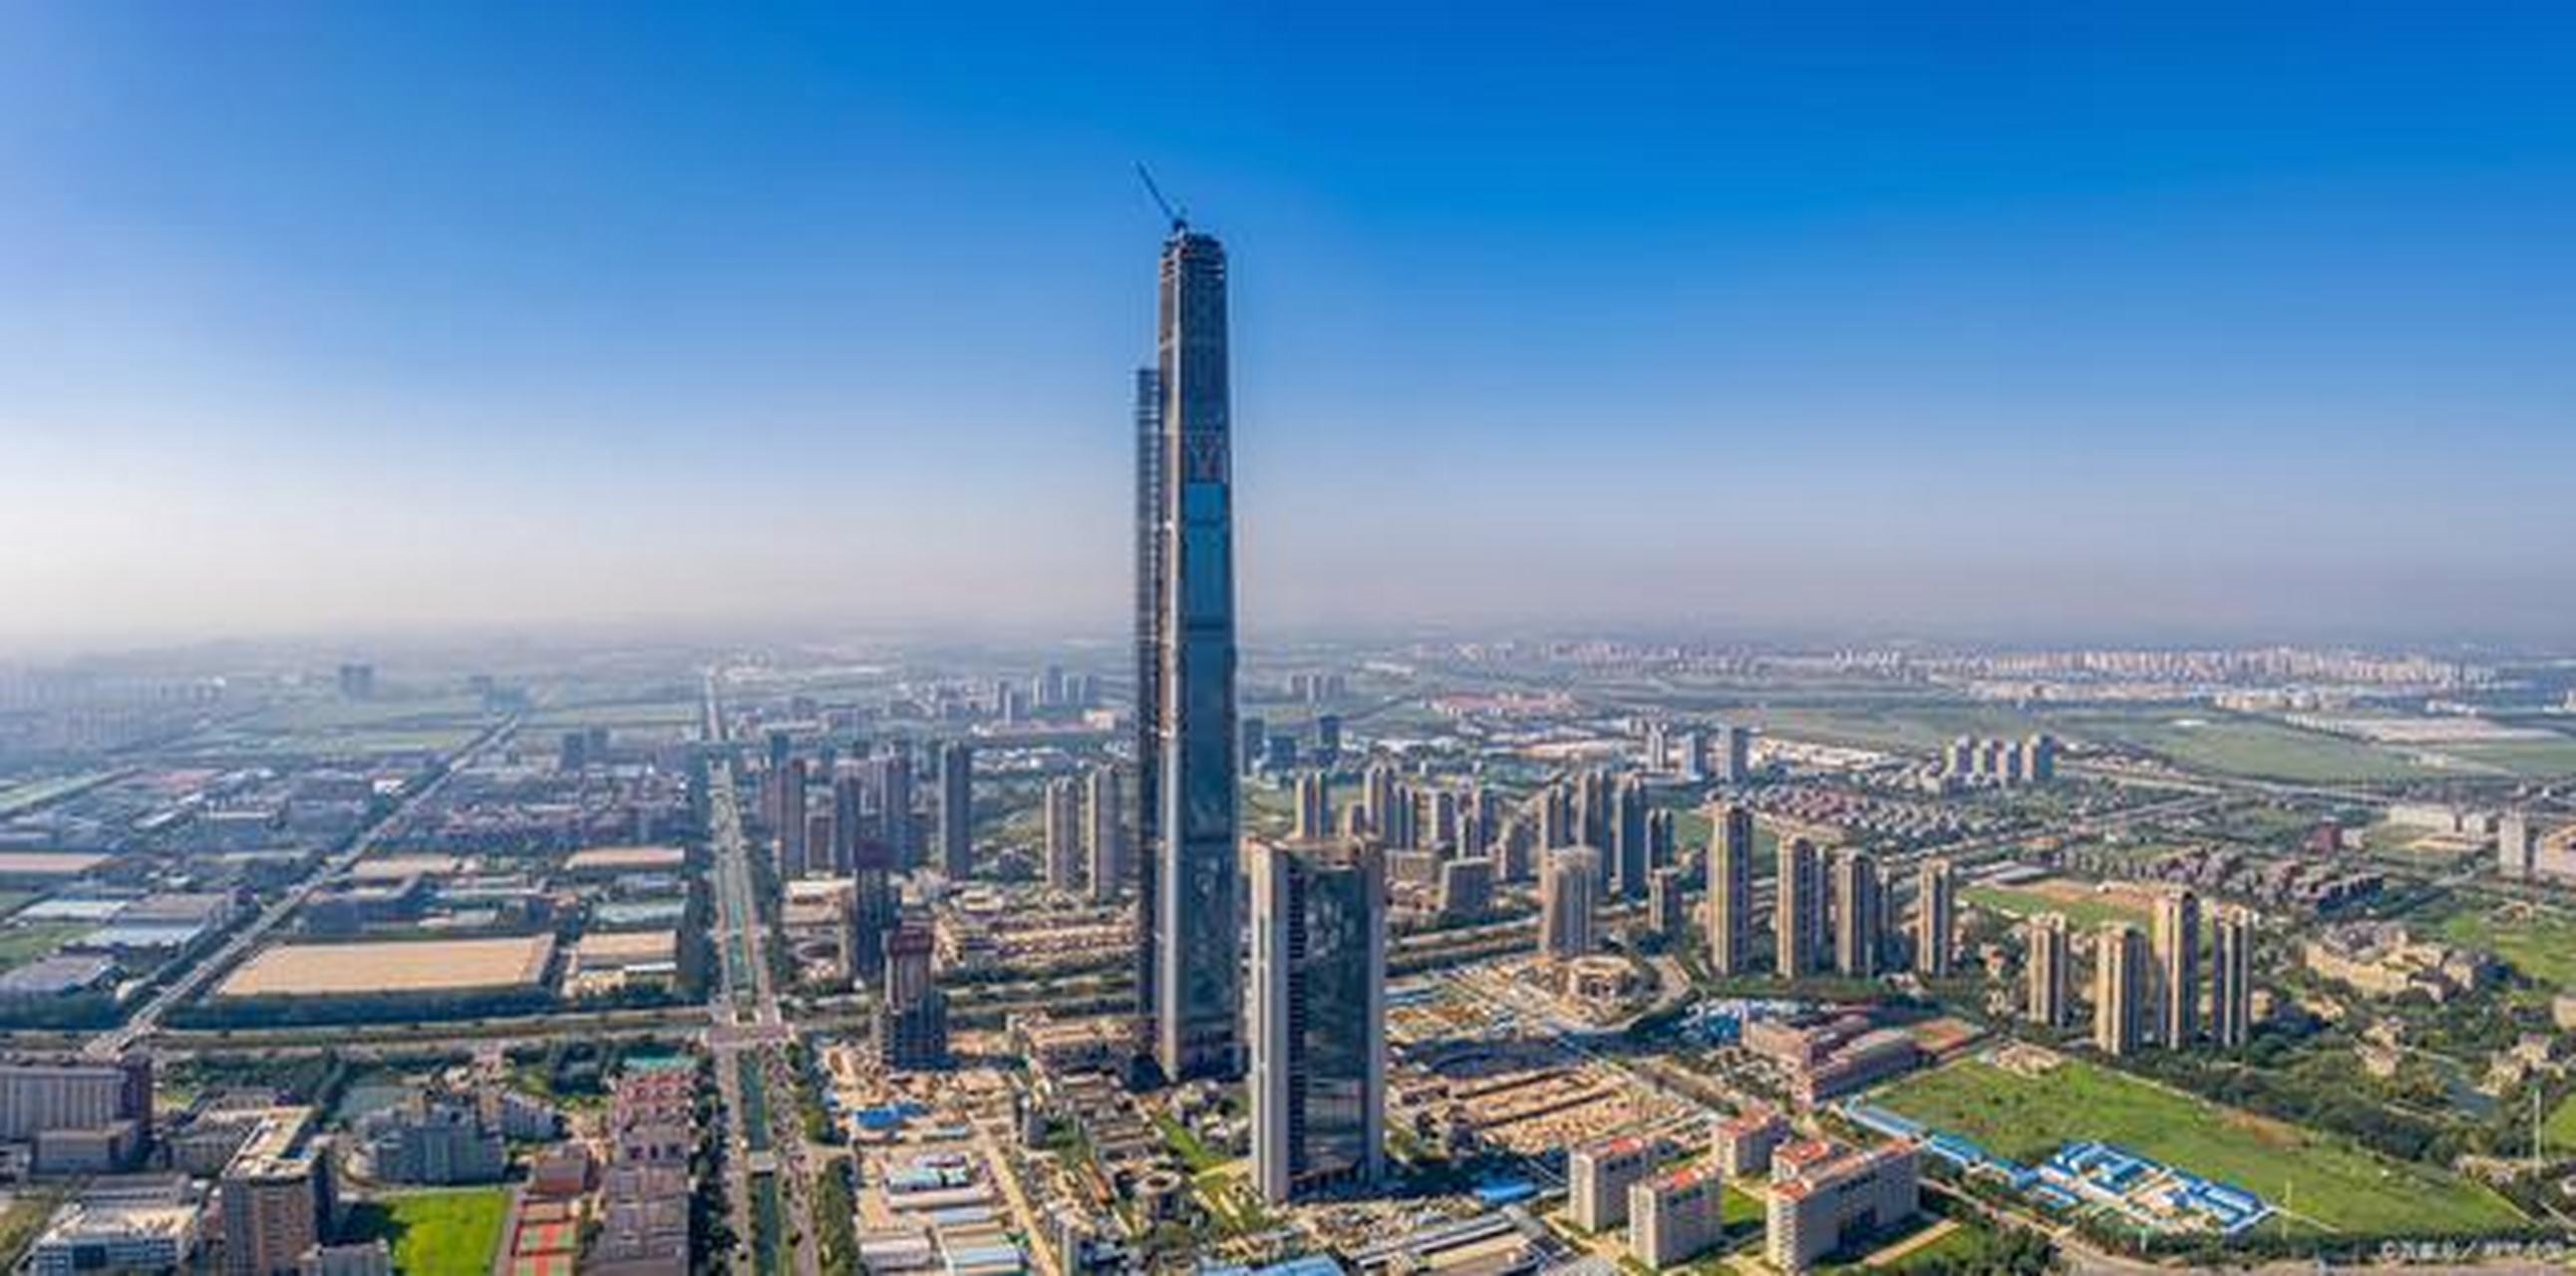 天津最大烂尾楼,同样是天津第一高楼——高银117大厦一直是天津引人